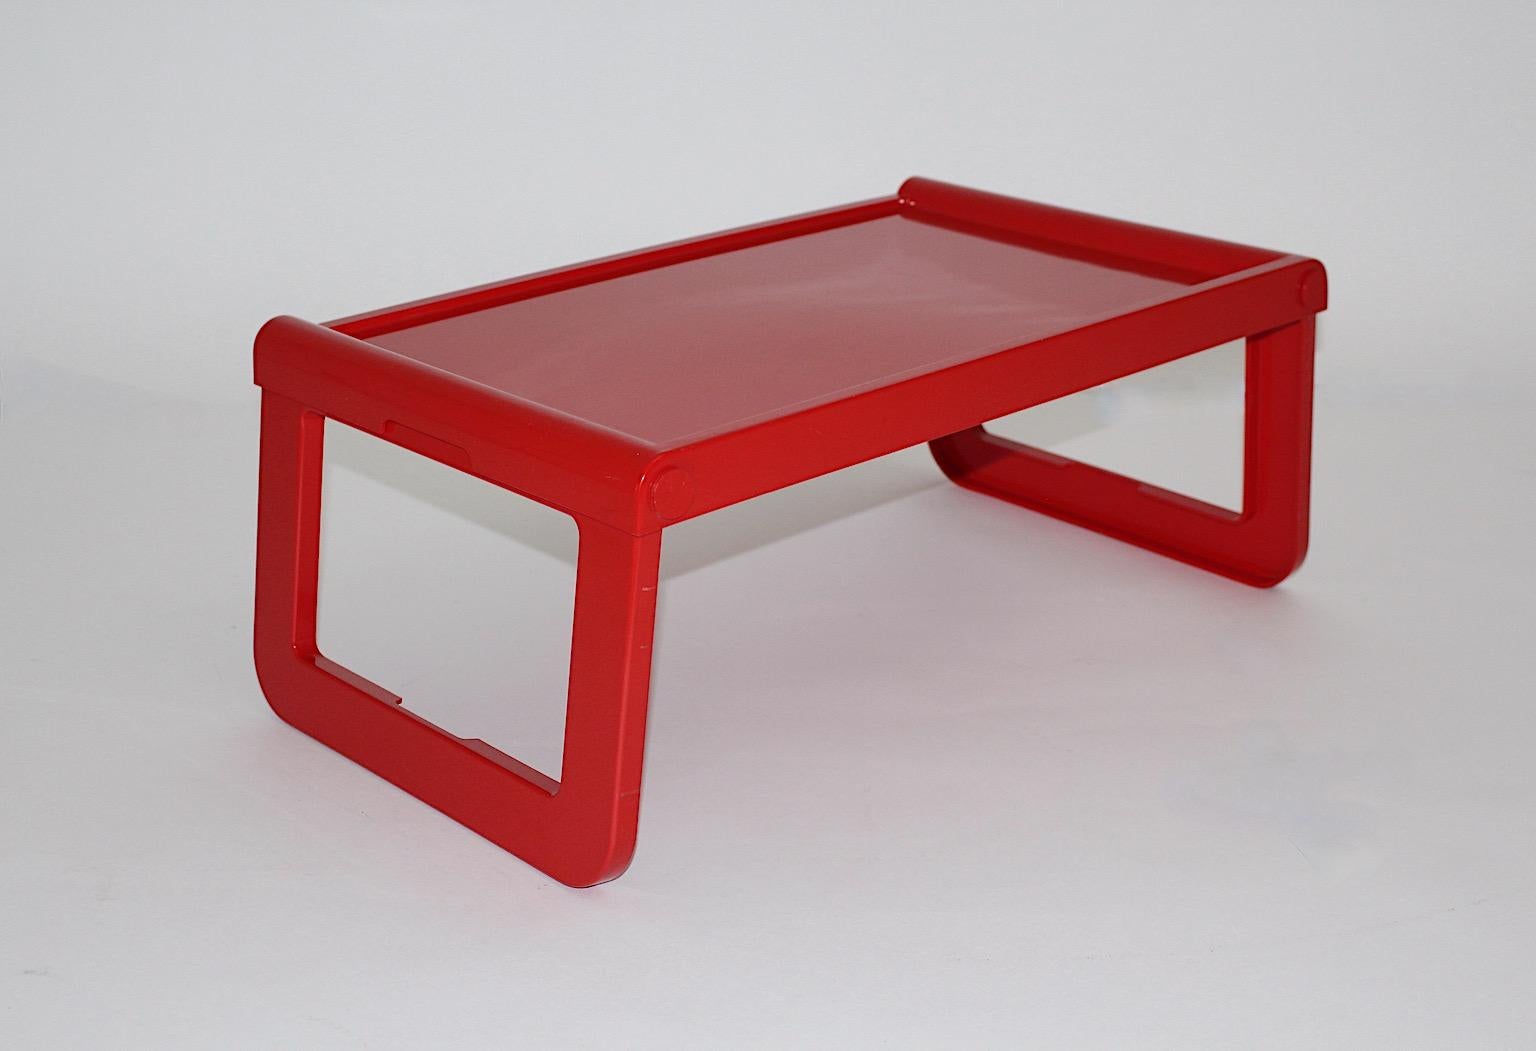 Space Age rouge vintage plateau ou table de petit déjeuner Modèle pepito de plastique conçu par Luigi Massoni Grafico Studio Zeto pour Guzzini 1970 Italie.
Parfait pour être utilisé comme table de petit-déjeuner pliable ou plateau ou comme table